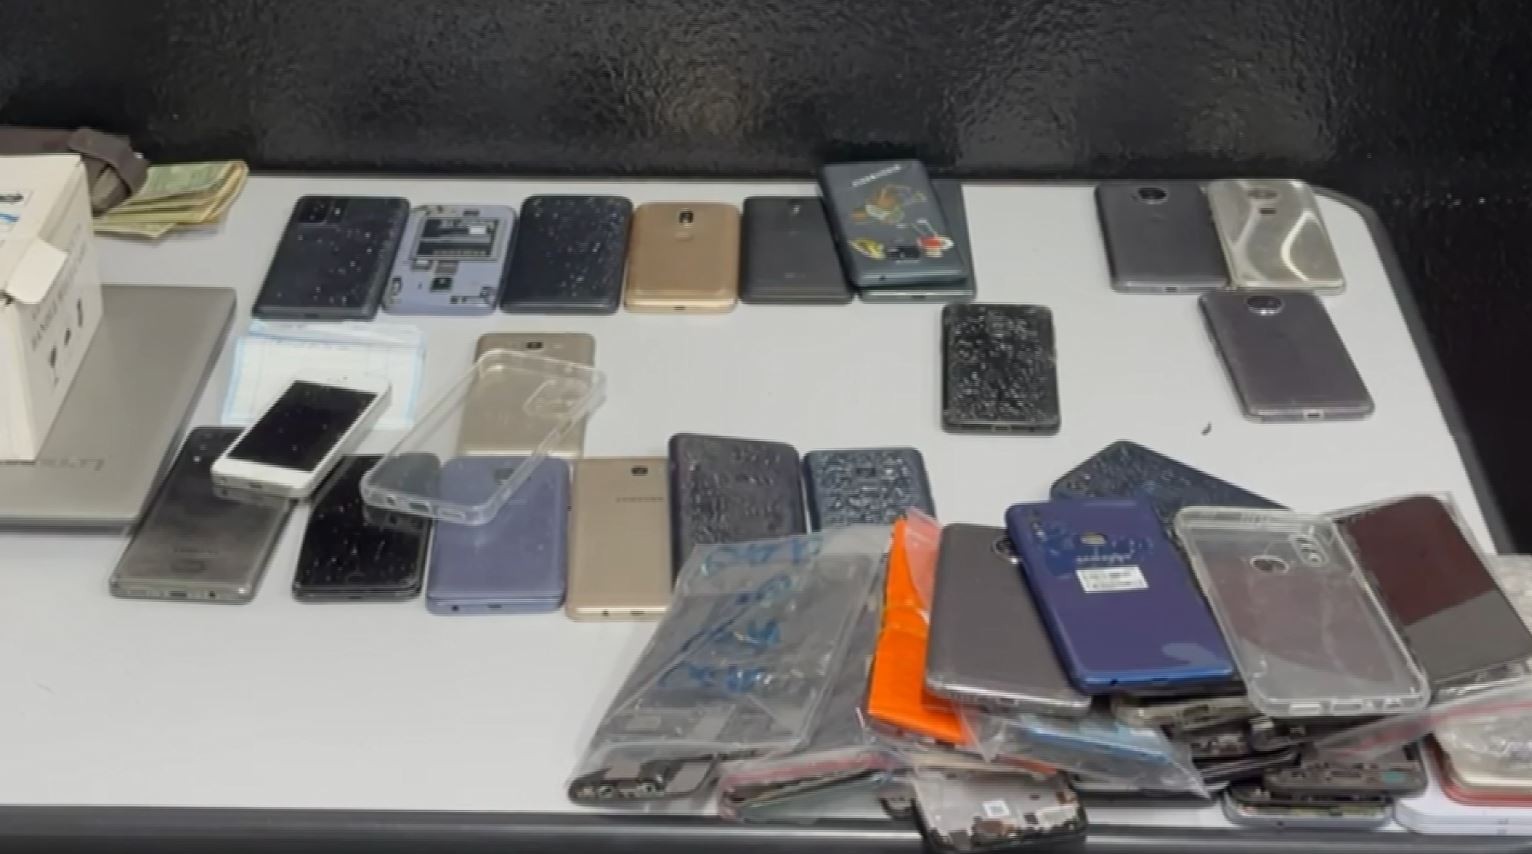 PM acha celulares roubados em banca de venda de eletrônicos no centro de Campinas e prende trio